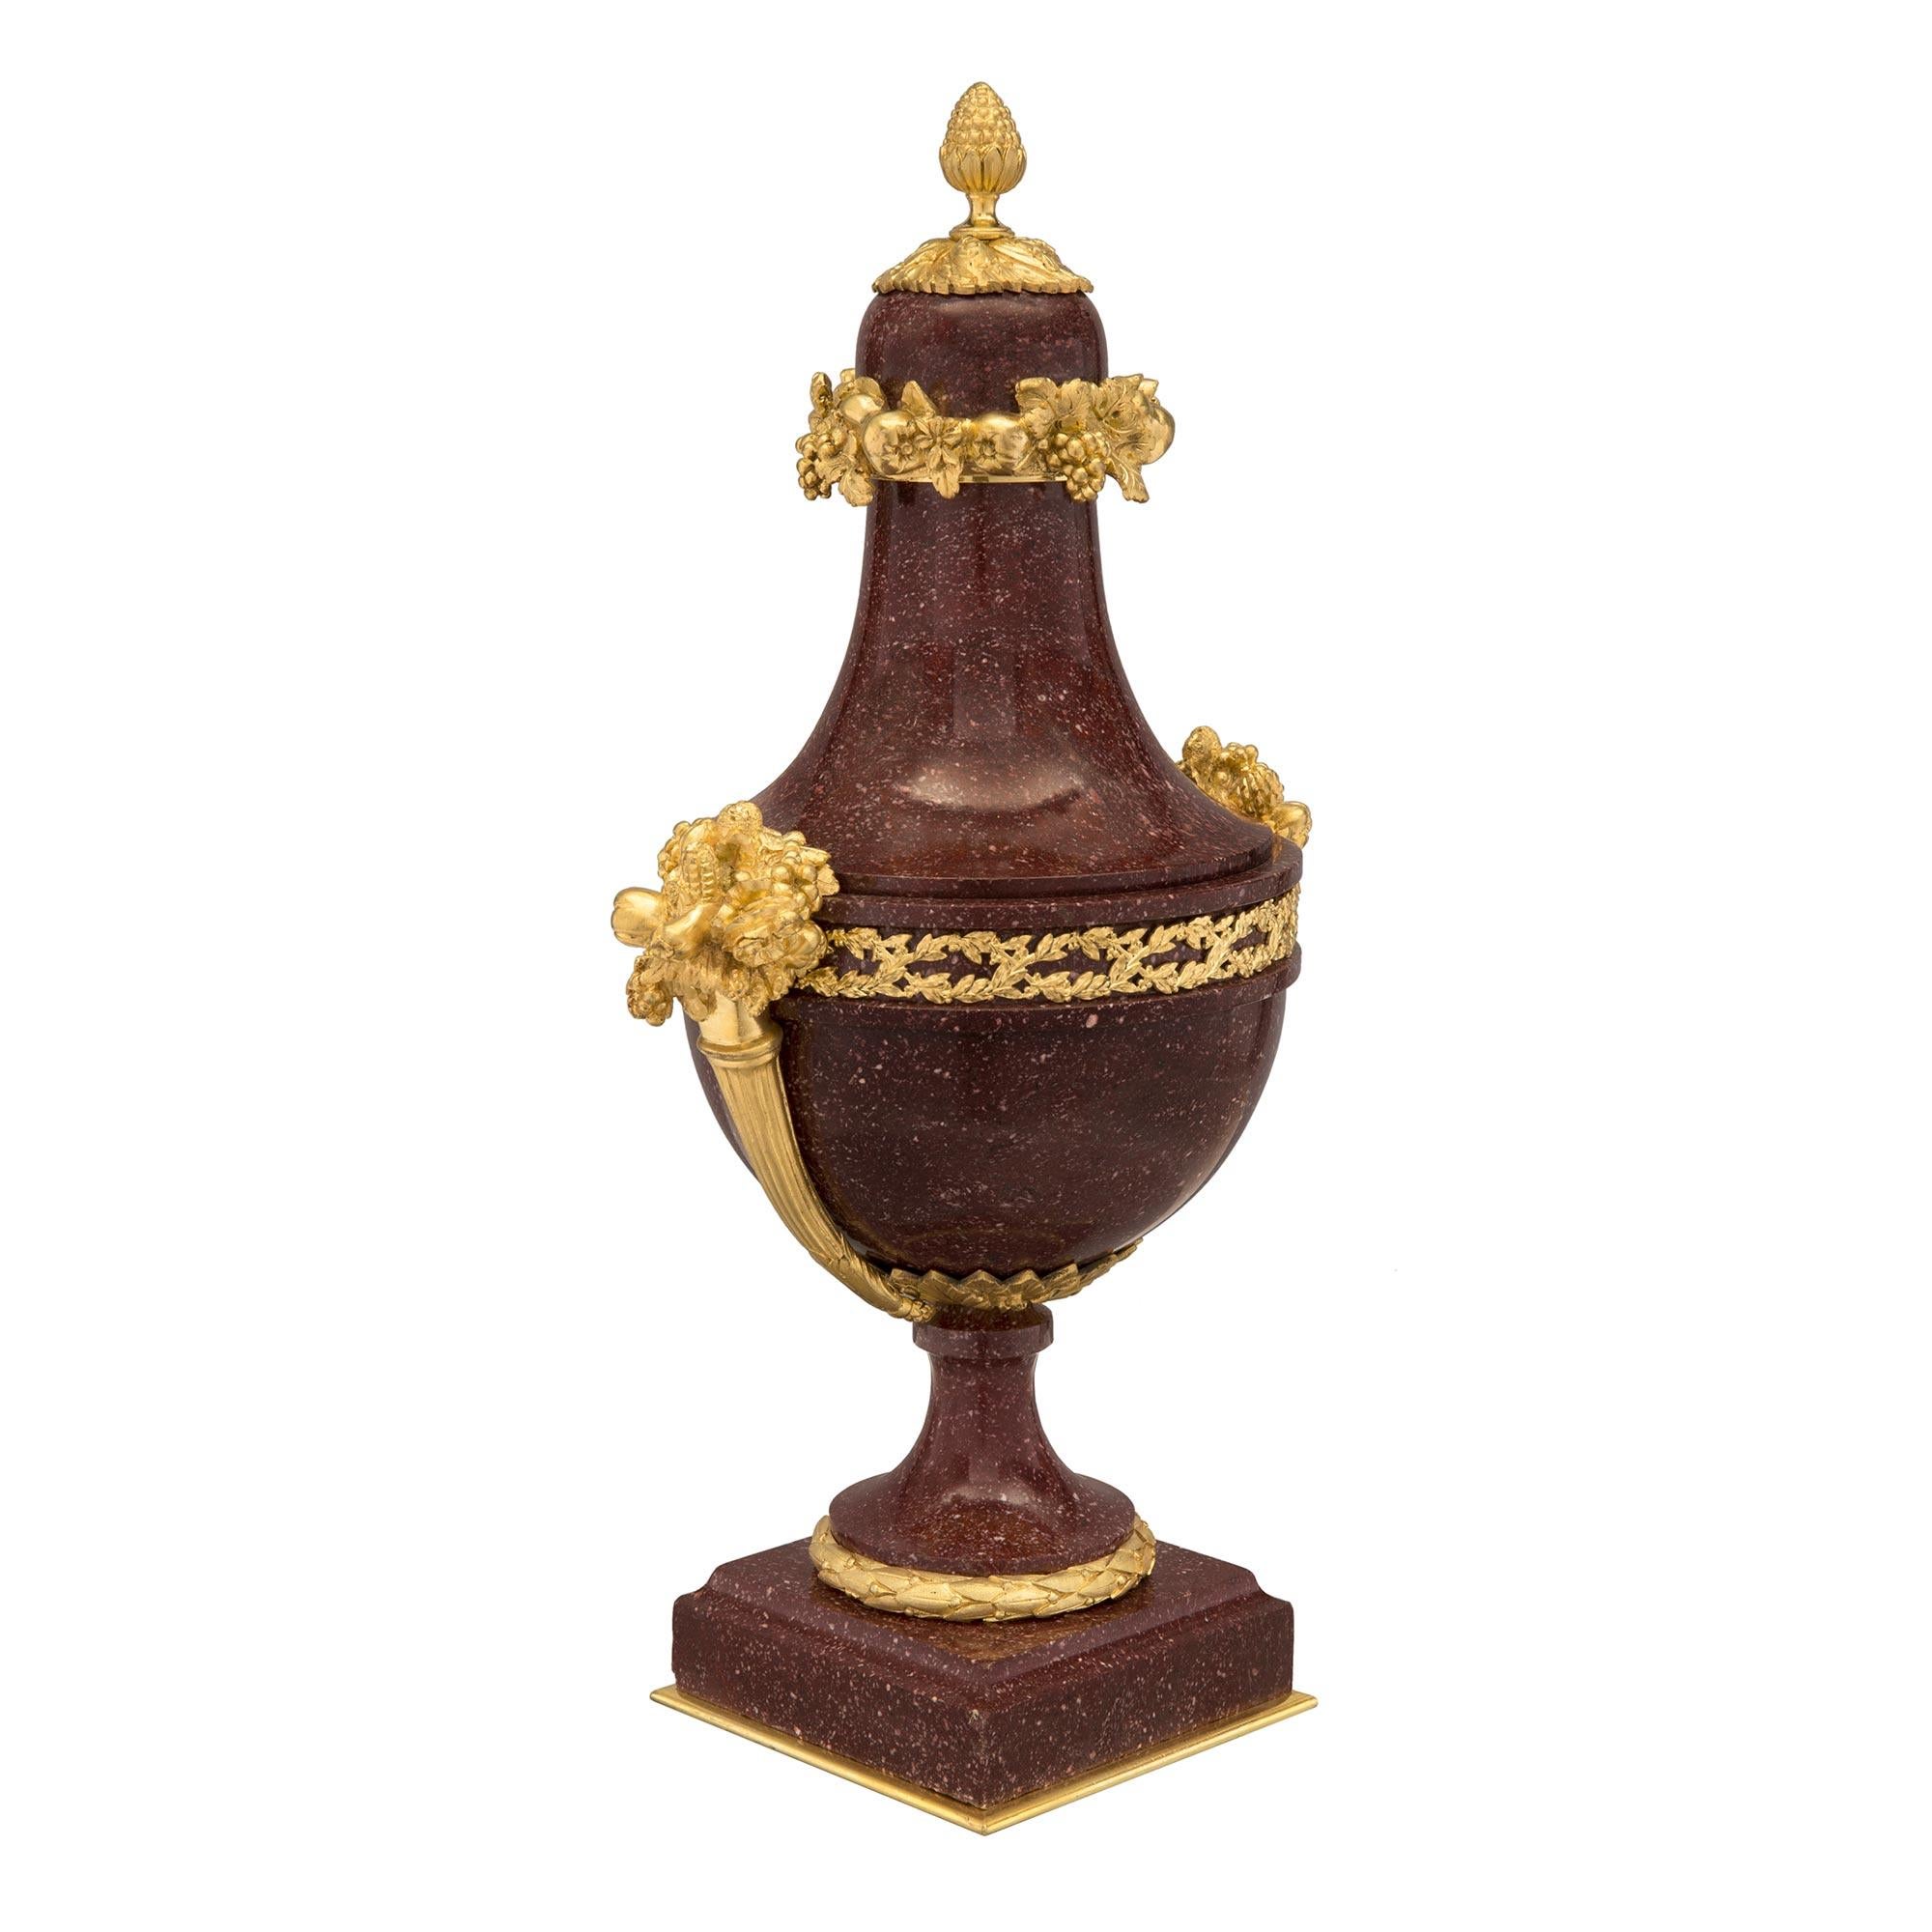 Une paire sensationnelle et de haute qualité d'urnes françaises de style Louis XVI du milieu du 19ème siècle, avec couvercle en porphyre et bronze doré au feu. La paire est surélevée par une plaque carrée en bronze doré sous la base carrée en marbre